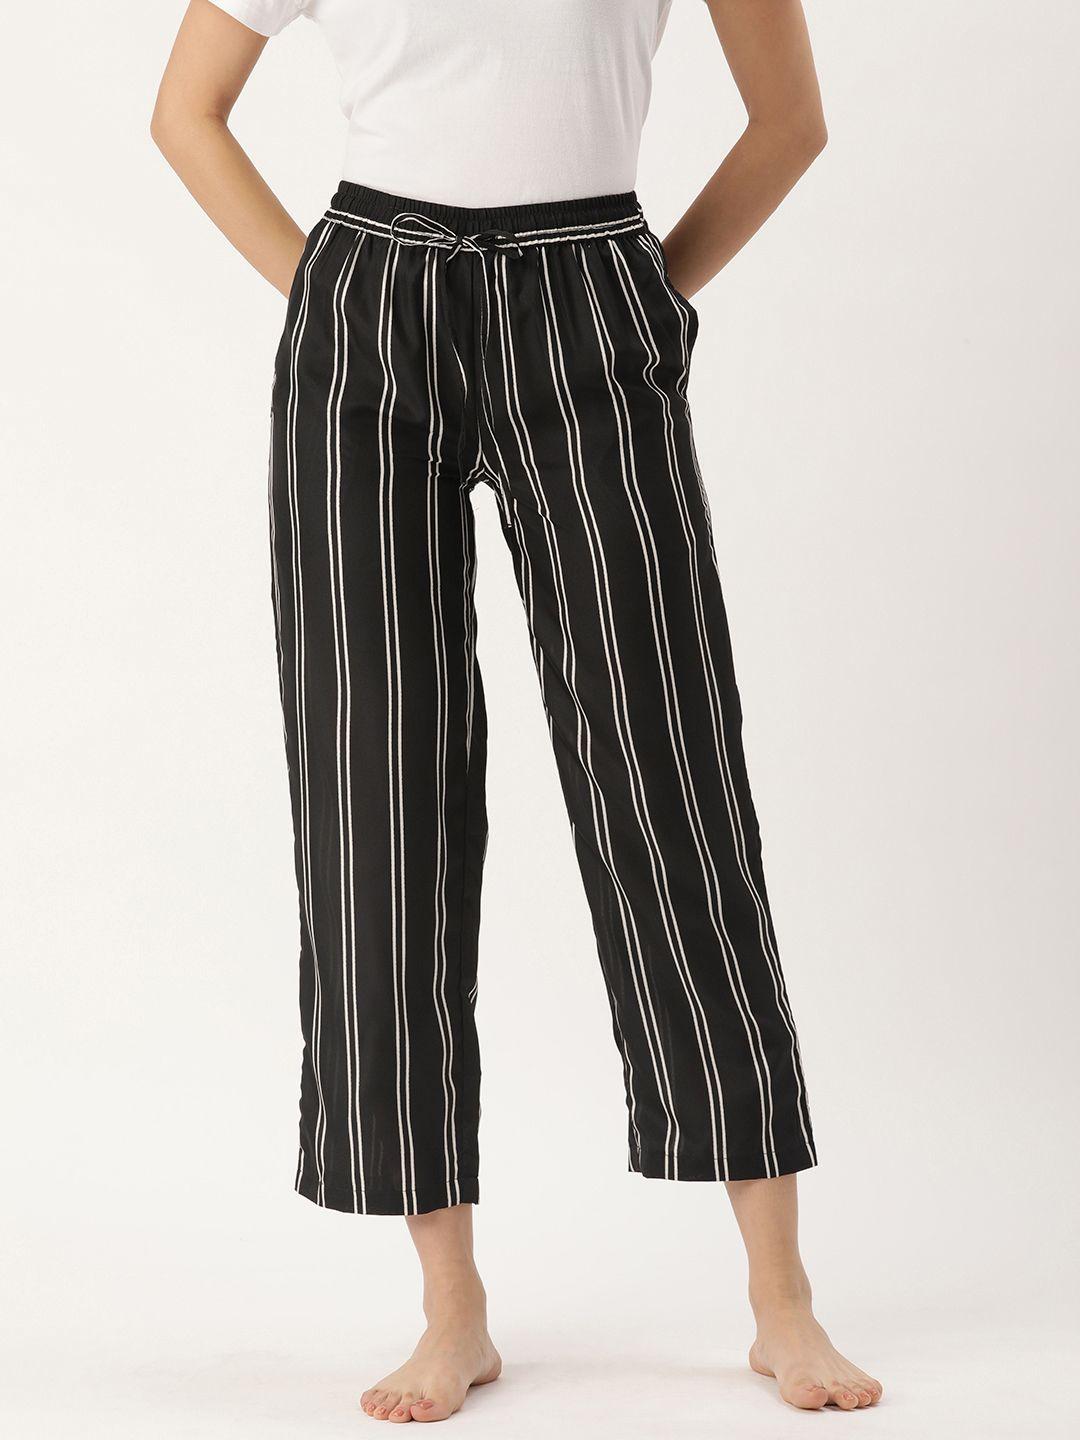 etc-women-striped-lounge-pants